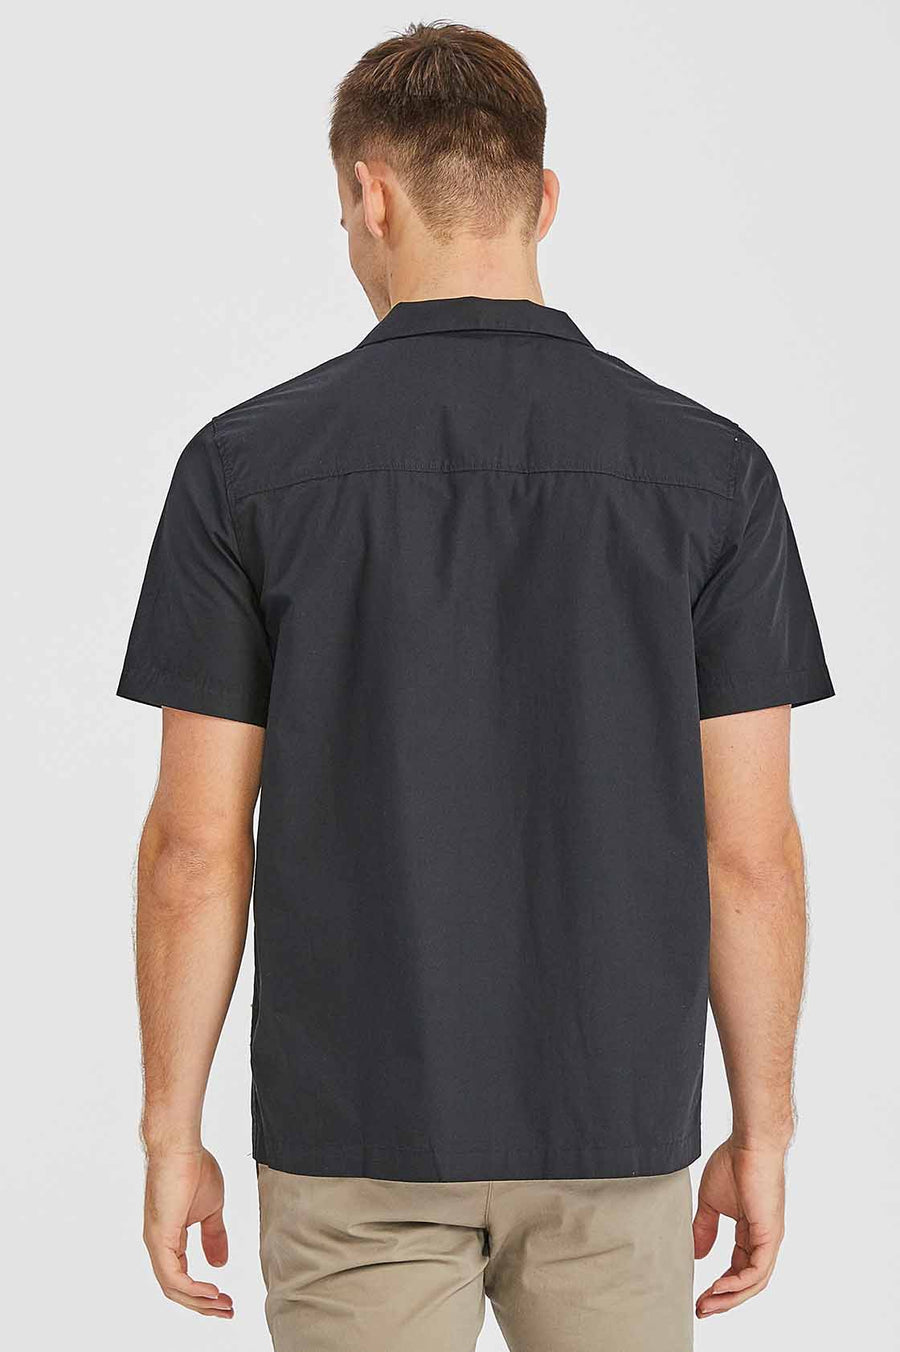 Kai City Shirt Black - Dr Denim Jeans - Australia & NZ